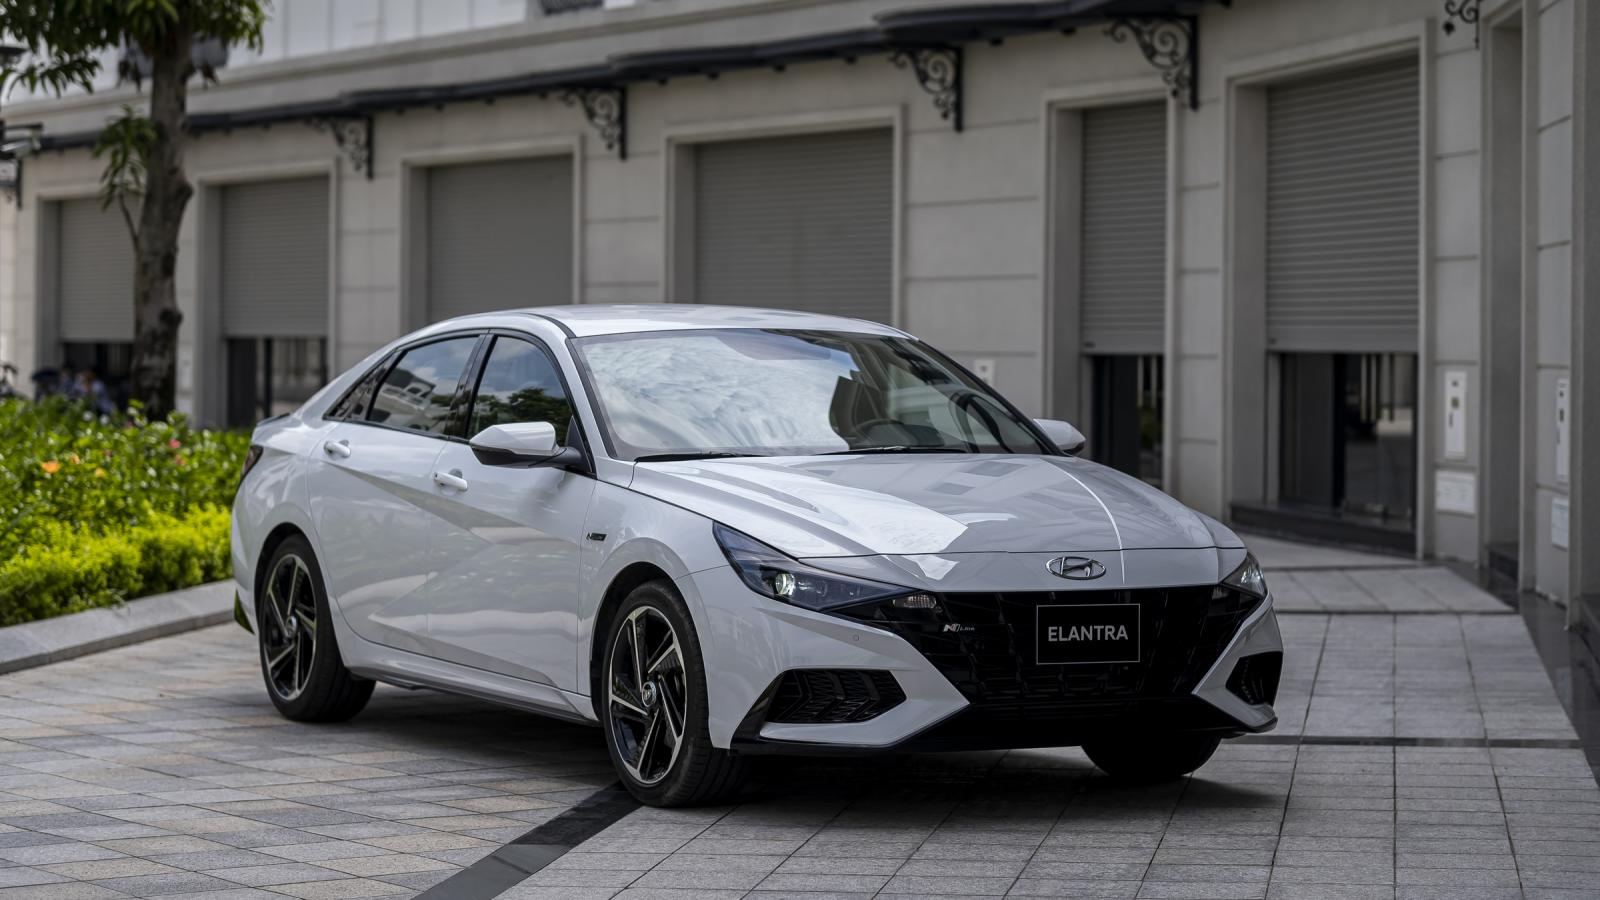 Hyundai Elantra 2021  Màu trắng giá ưu đãi